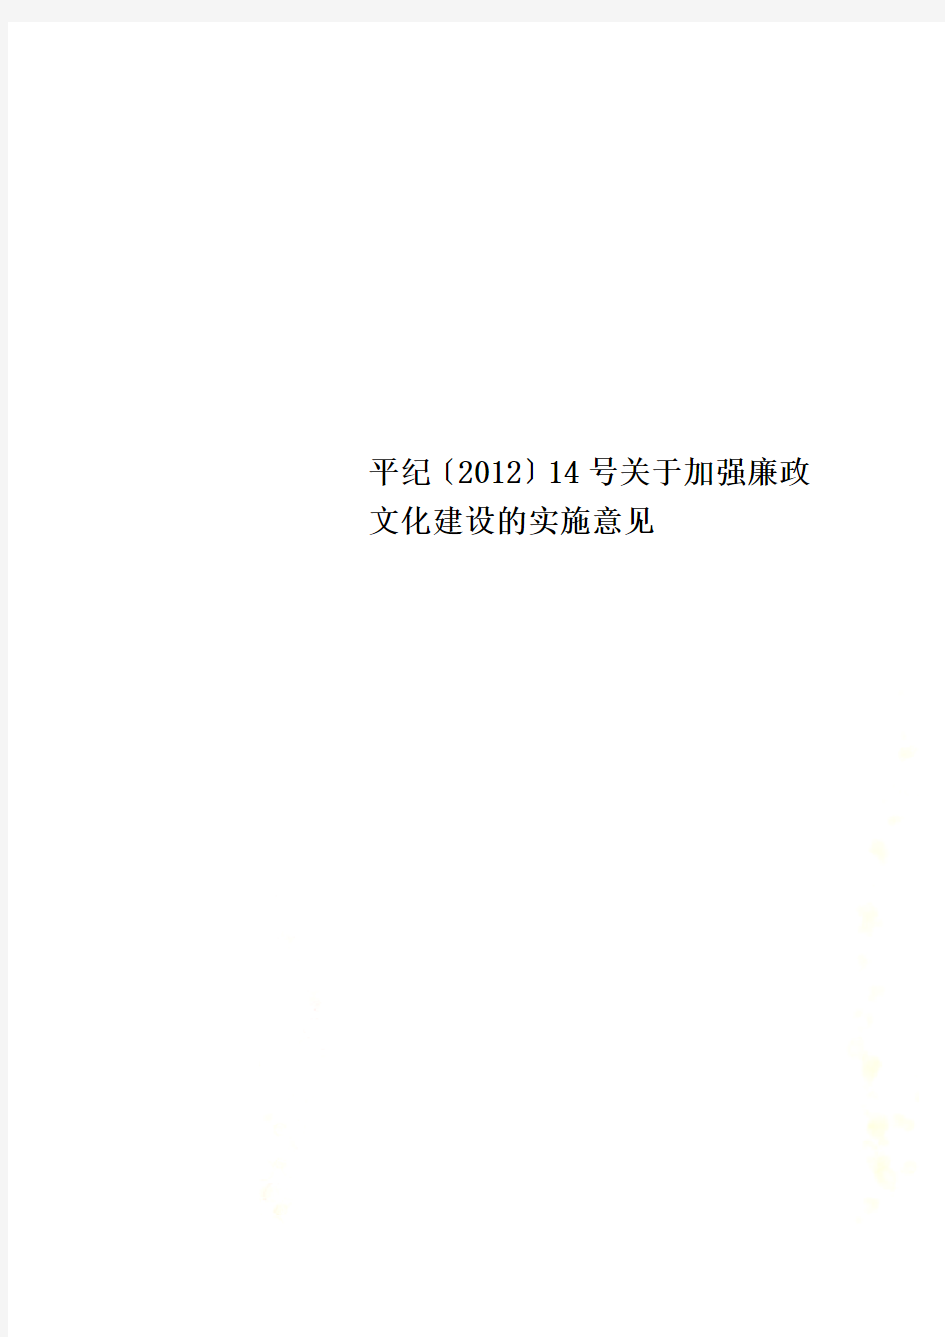 平纪〔2012〕14号关于加强廉政文化建设的实施意见